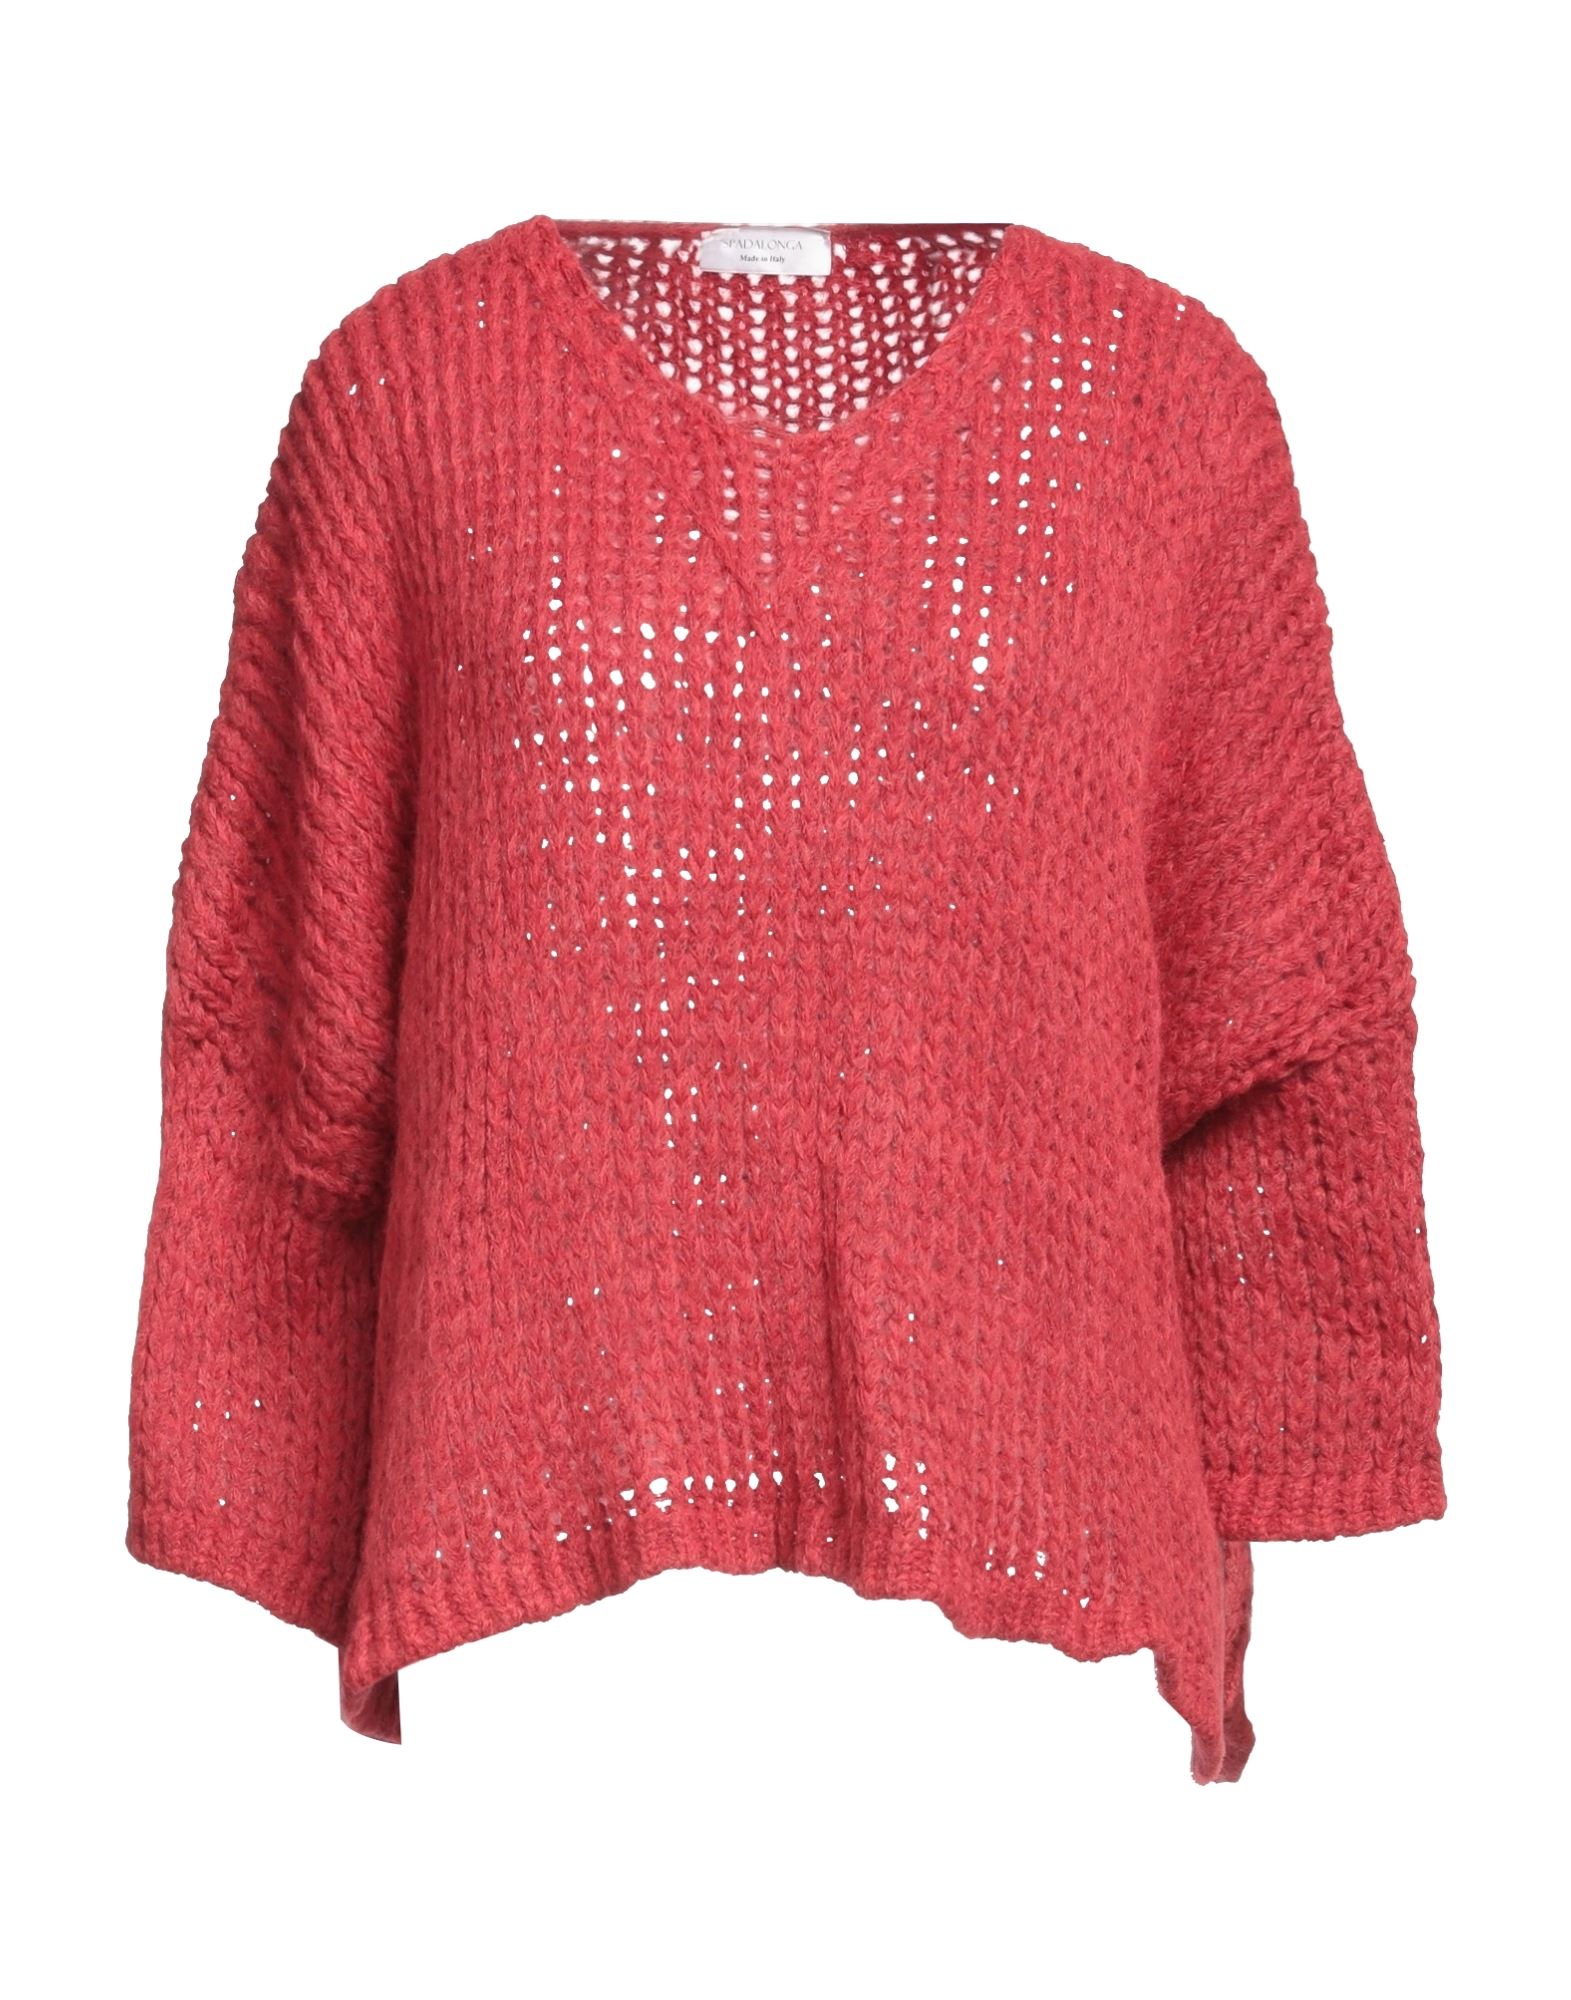 Spadalonga Sweaters In Red